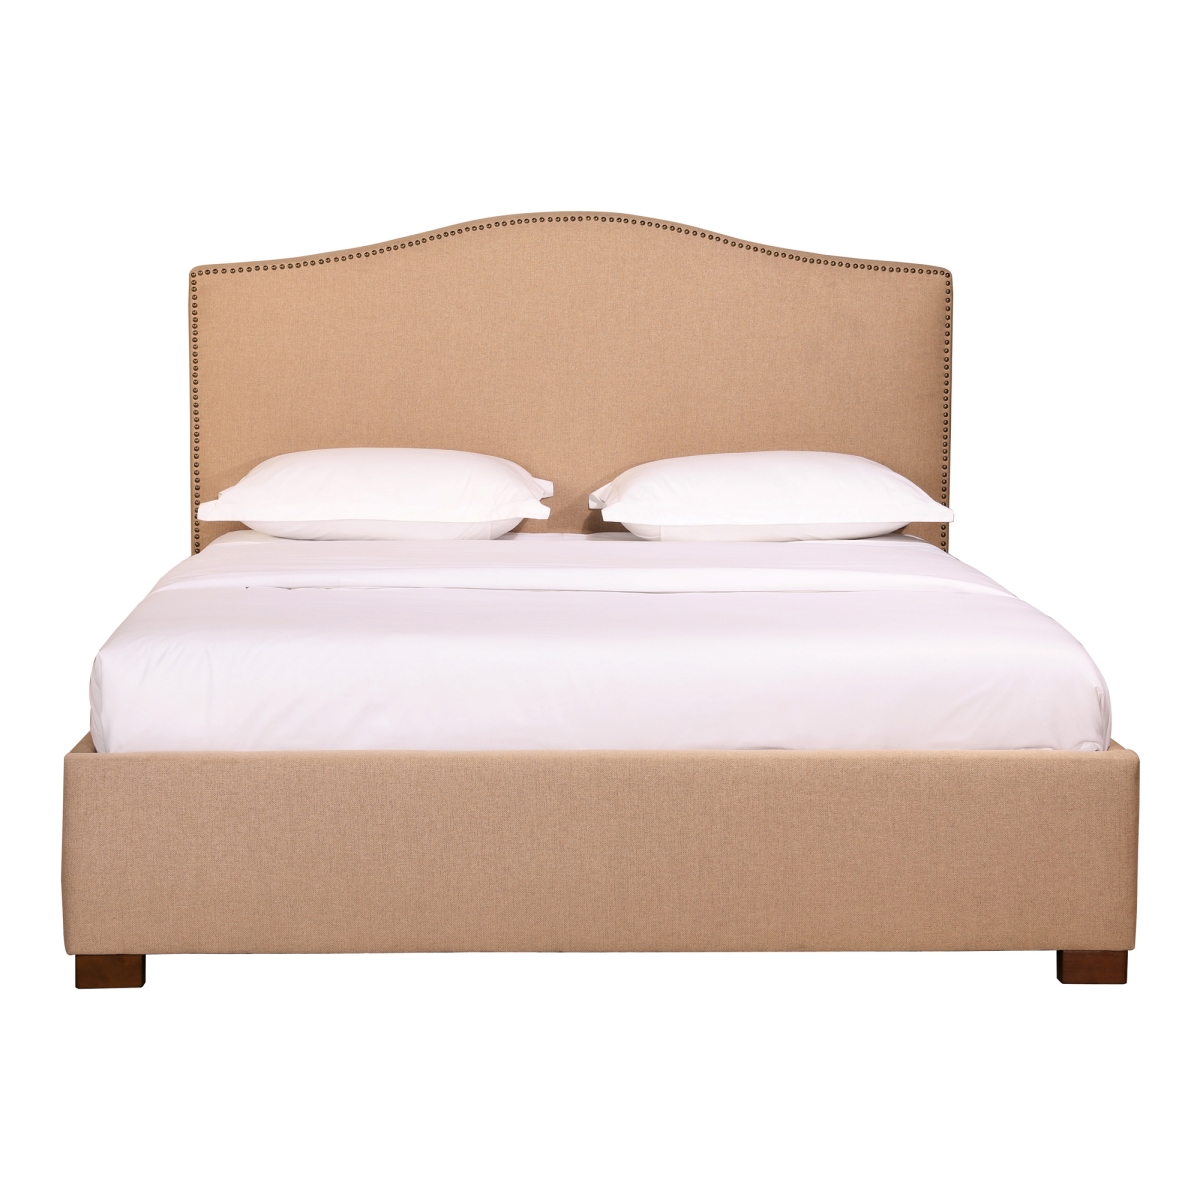 Rn-1138-34 Zale Oatmeal King Size Bed, Beige